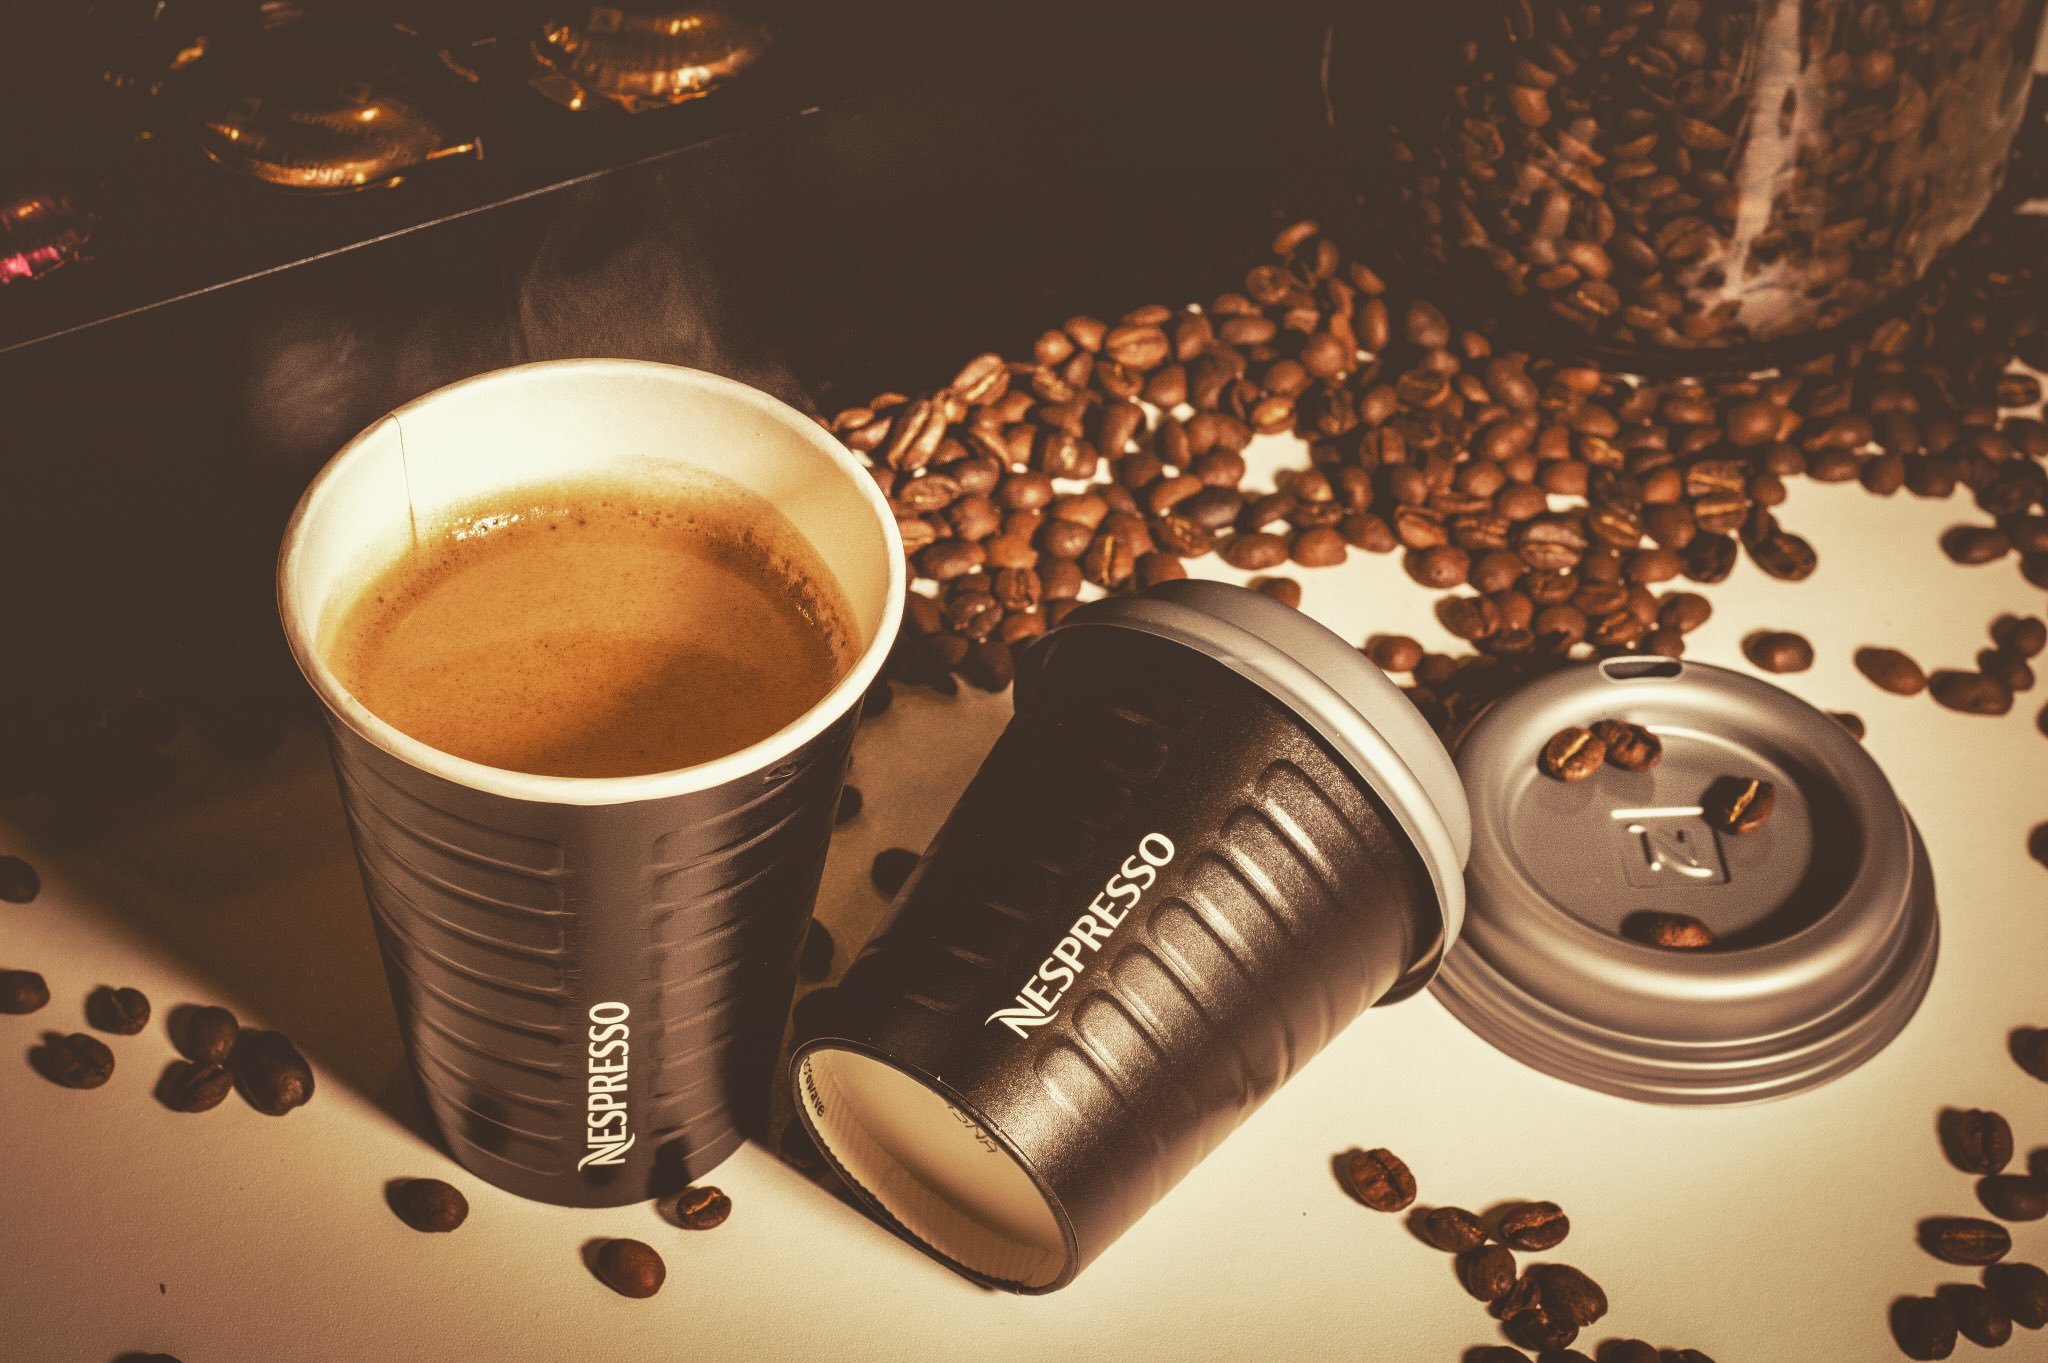 Nespresso Coffee